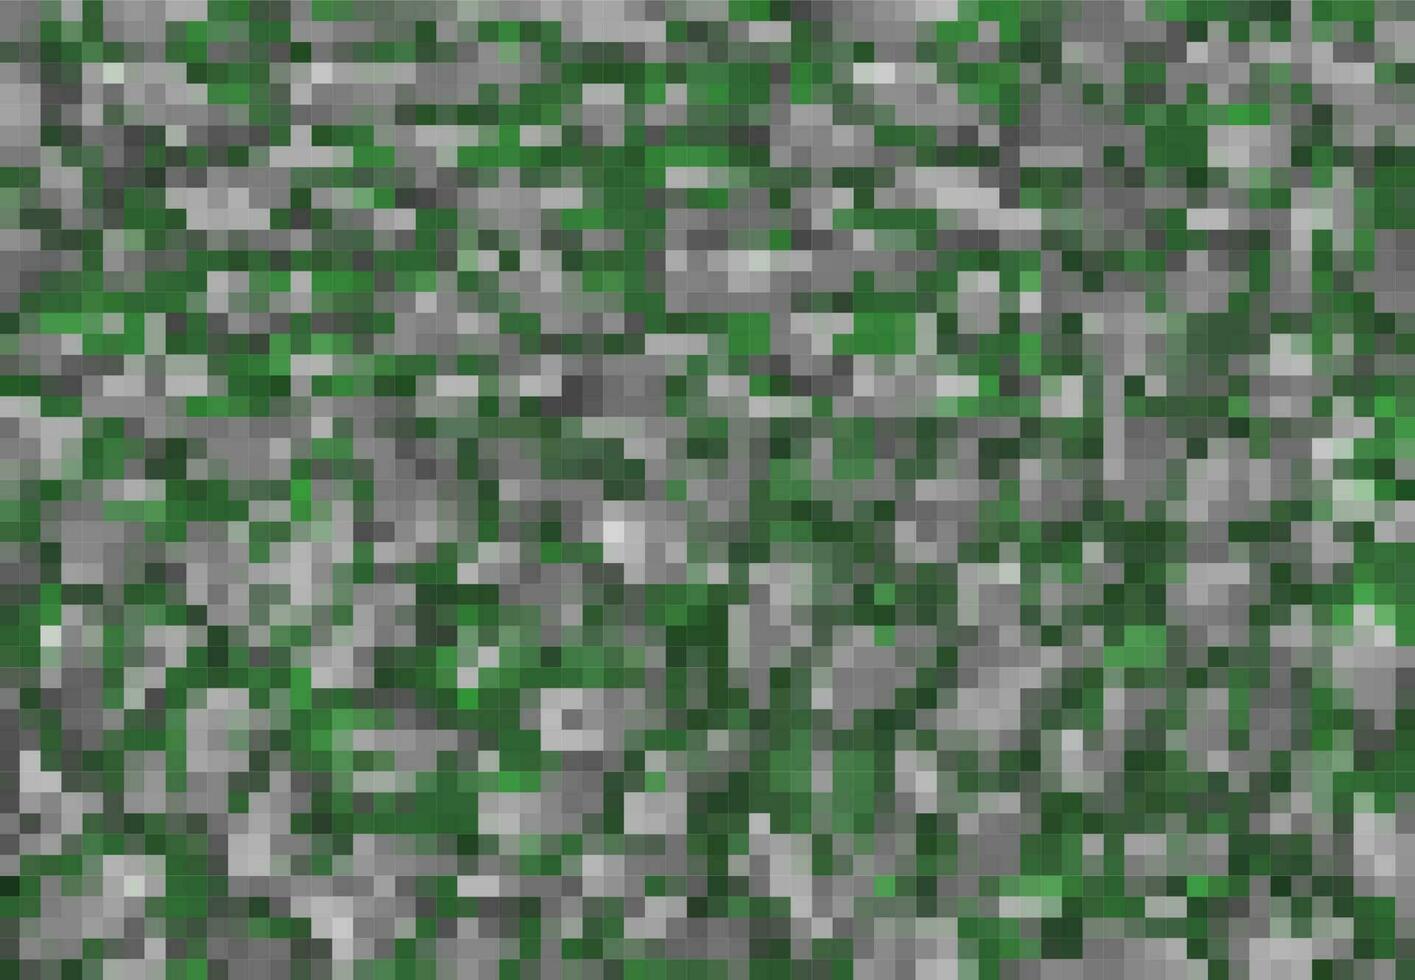 tarnen Pixel Spiel kubisch Hintergrund Muster vektor